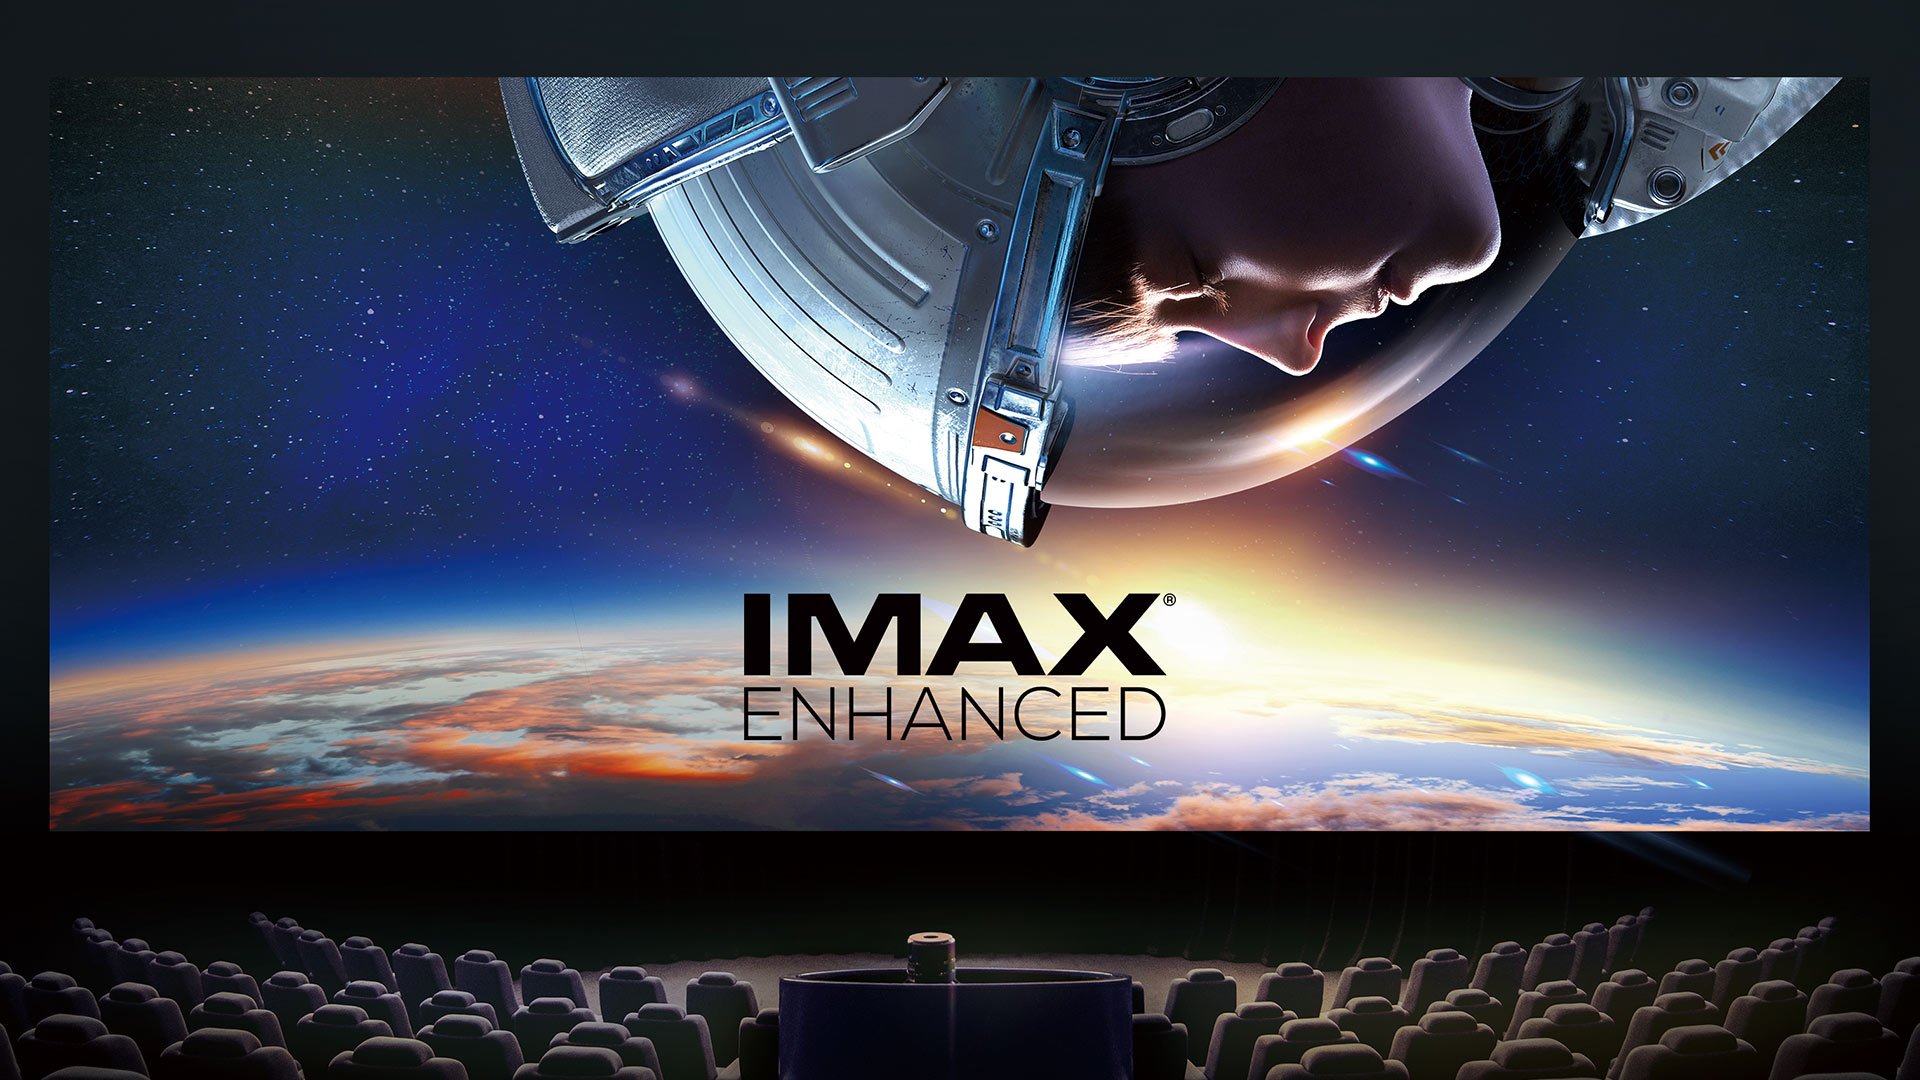 IMAX ENHANCED